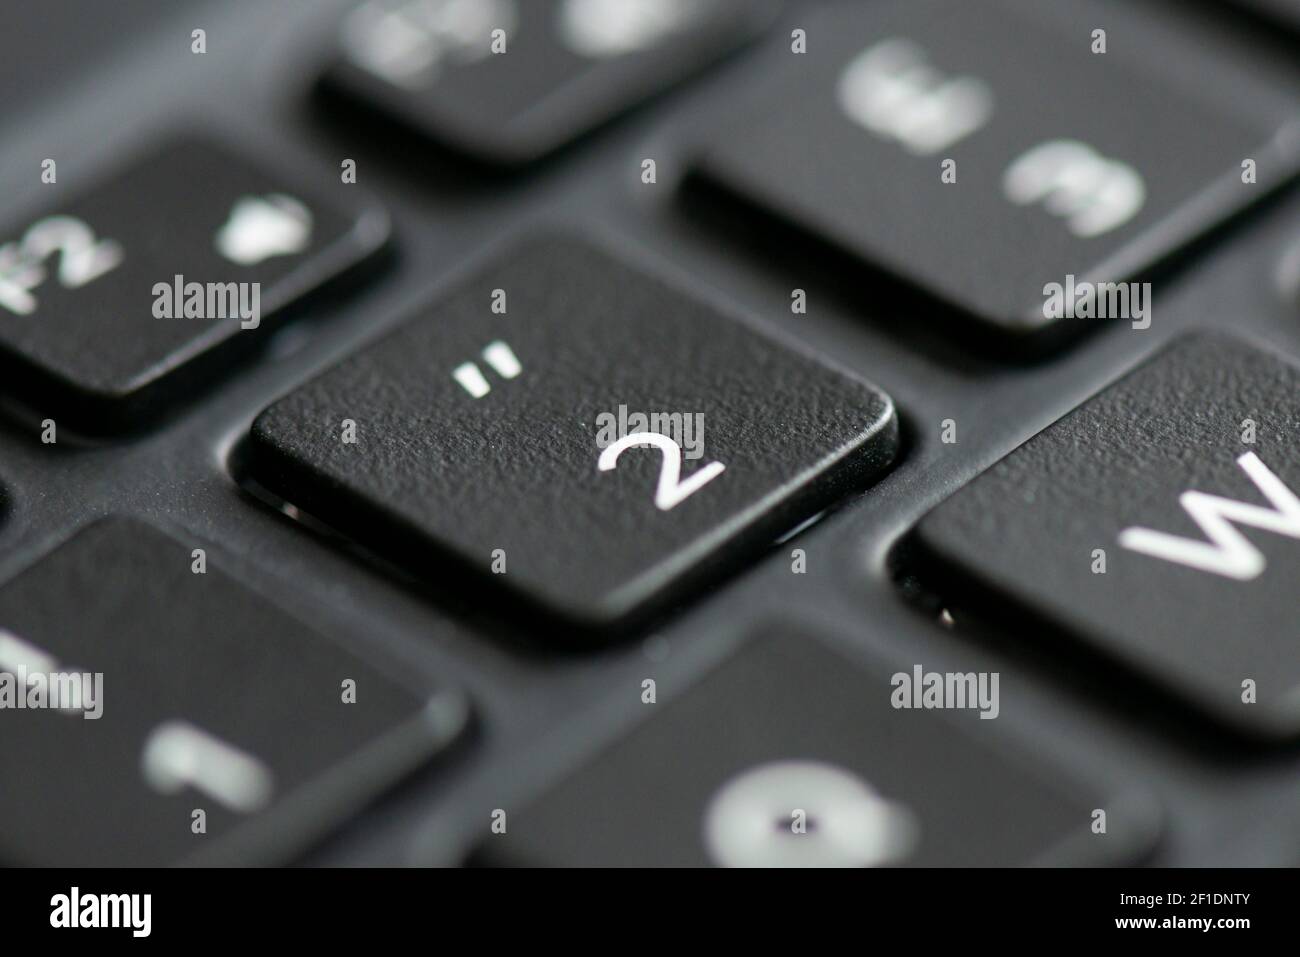 Touche 2 et guillemets sur le clavier d'un ordinateur portable Photo Stock  - Alamy